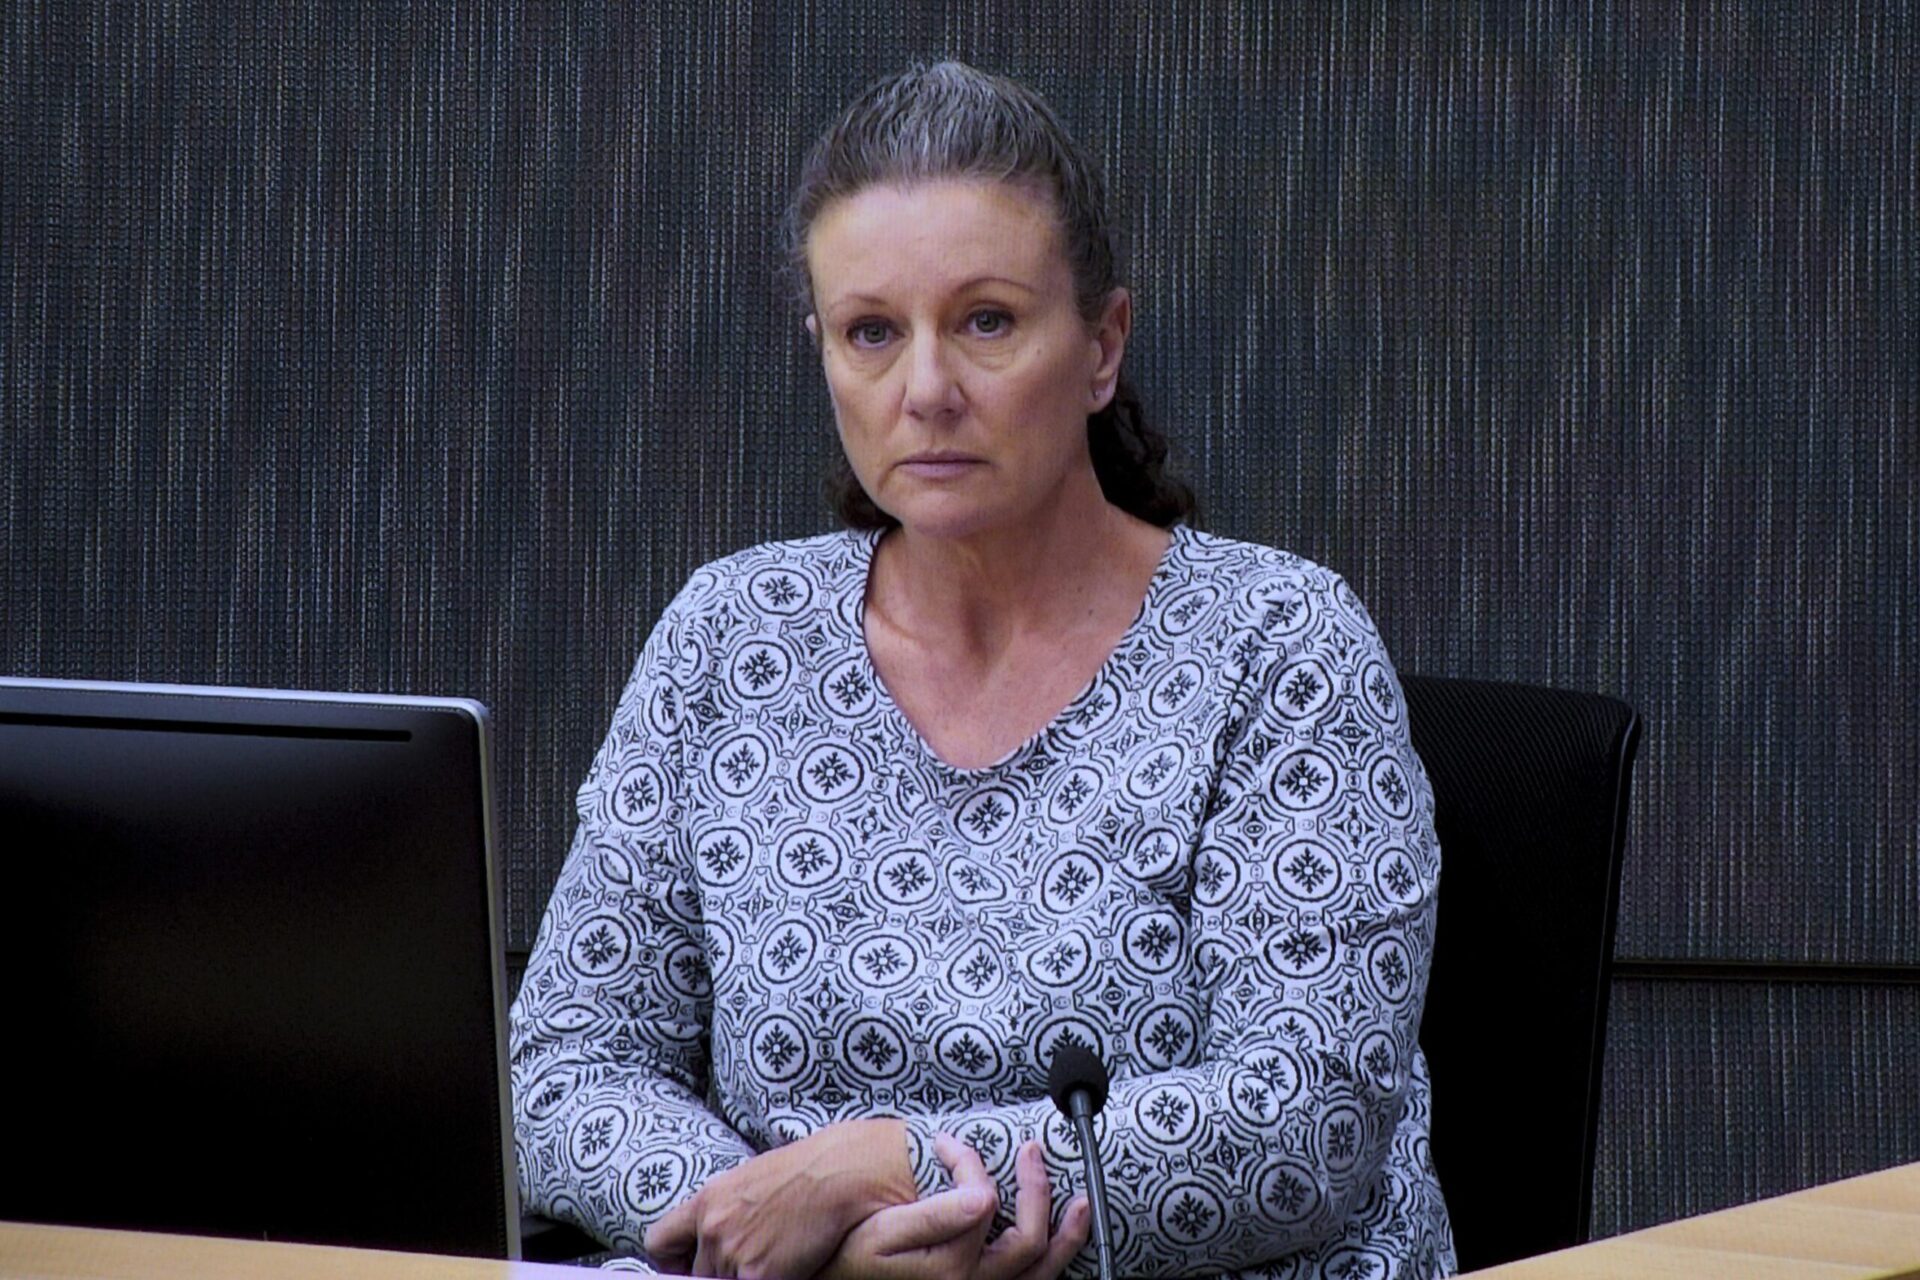 Investigación australiana pregunta si mamá asfixió a sus 4 hijos